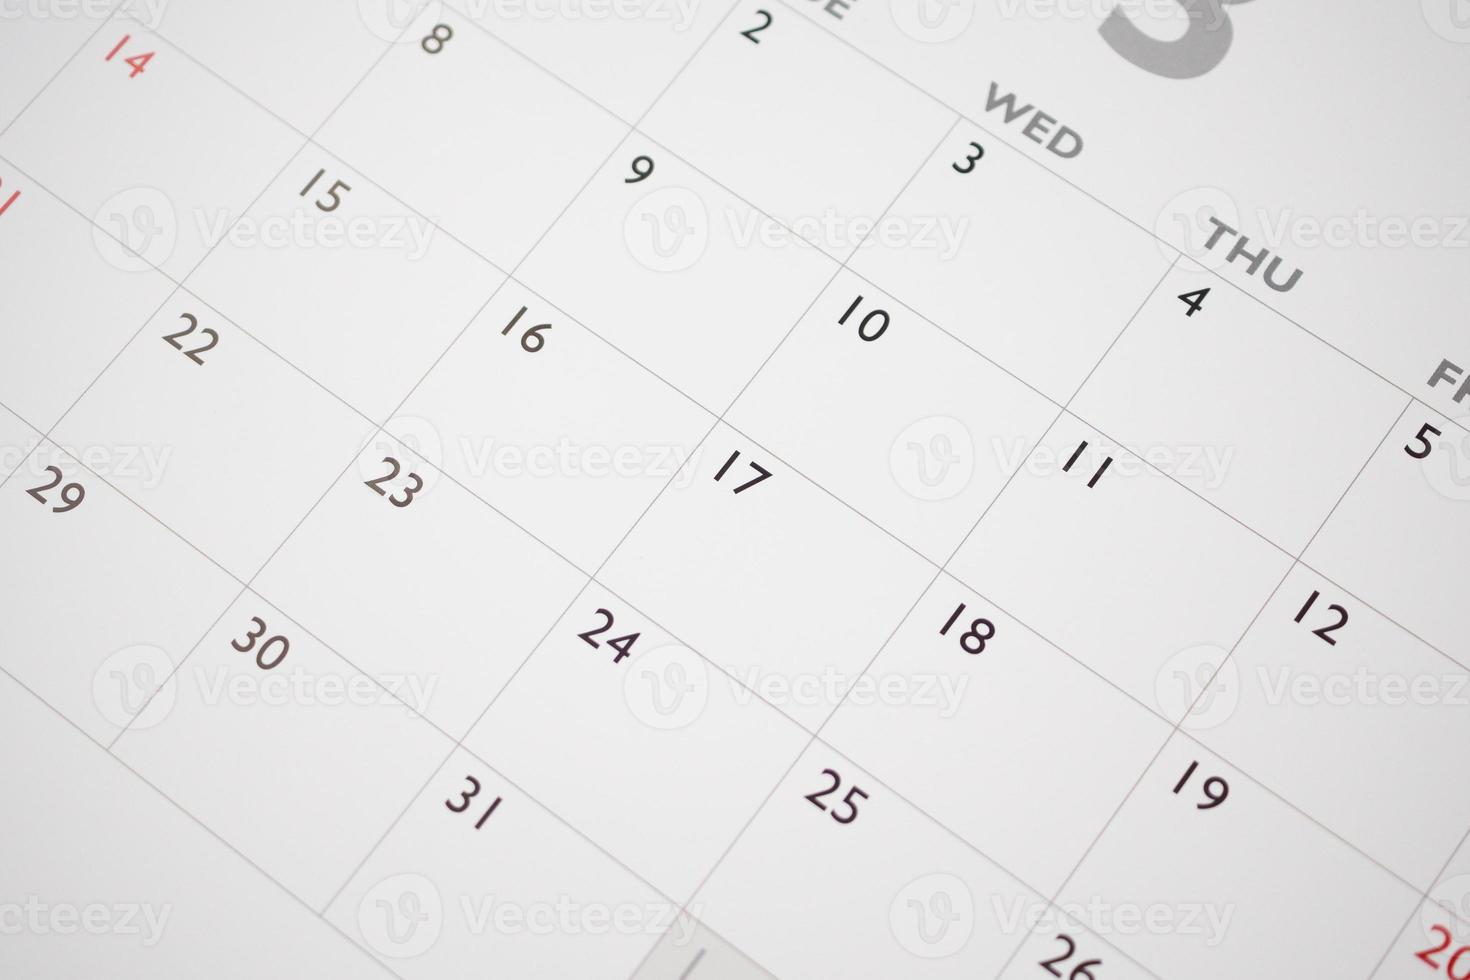 kalender sida datum bakgrund företag planera utnämning möte begrepp foto